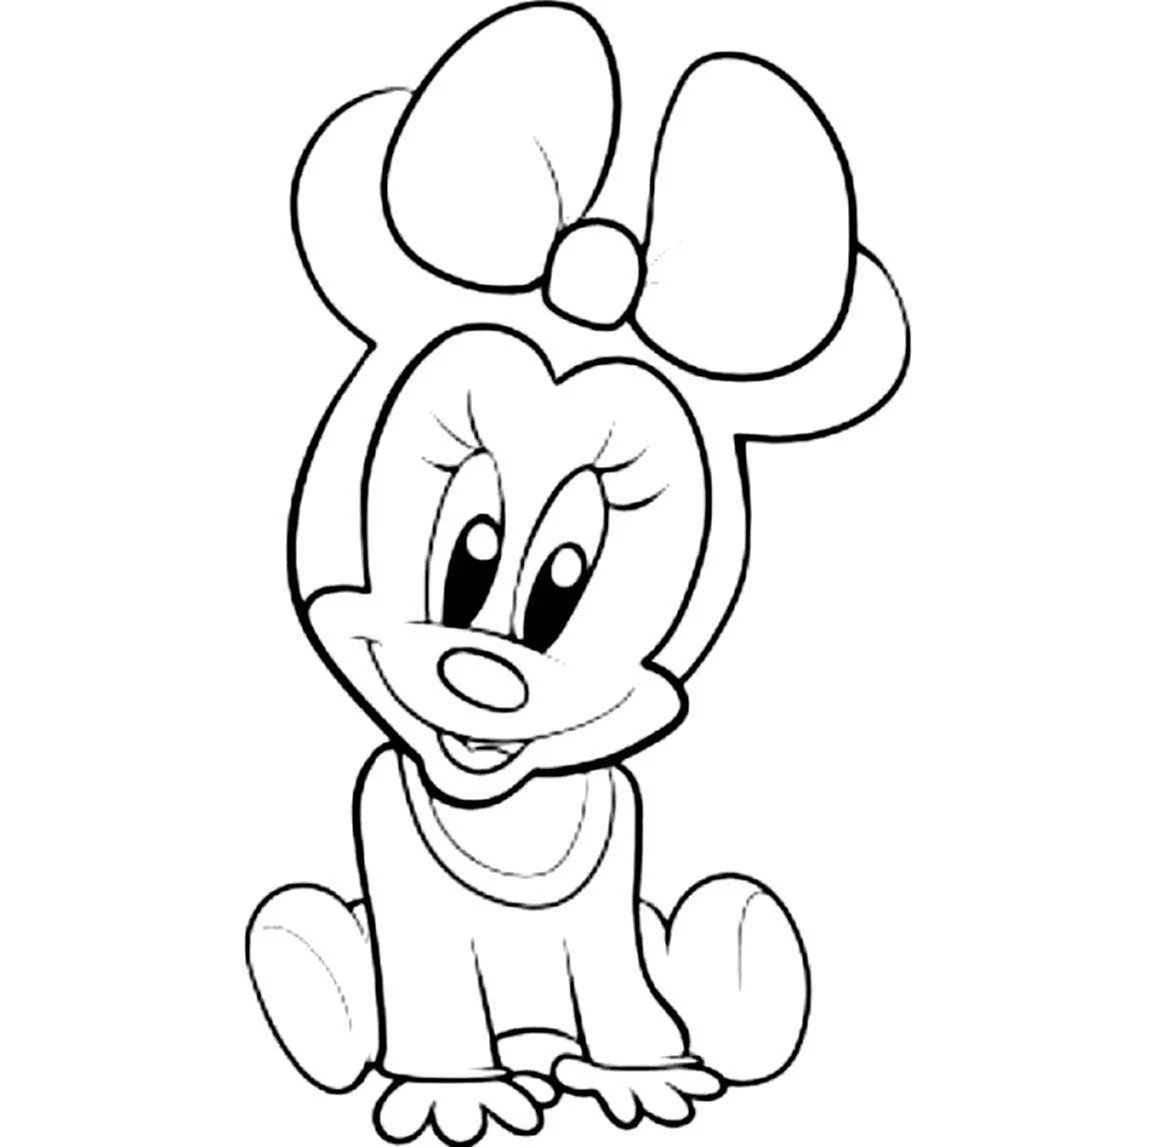 Герои мультфильмов карандашом Микки Маус. Дисней персонажи для срисовки Дисней Мики Маус. Персонажи Мики Маус норисовать. Минни Маус рисунок для срисовки.